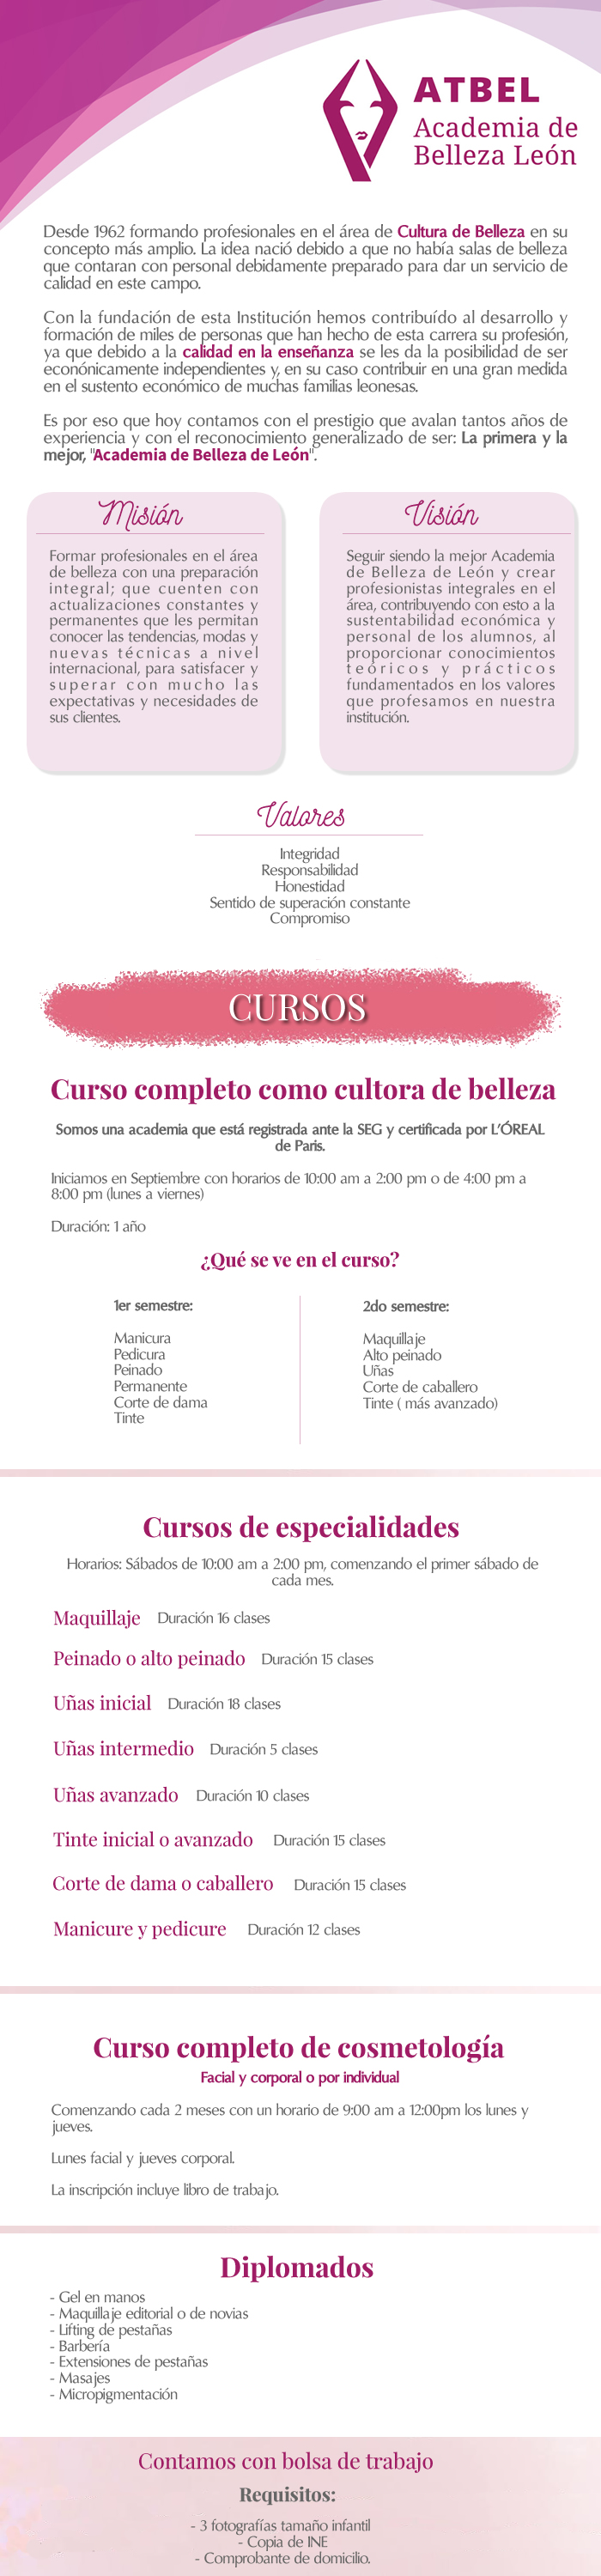 Academia de Belleza León ATBEL en León, Guanajuato